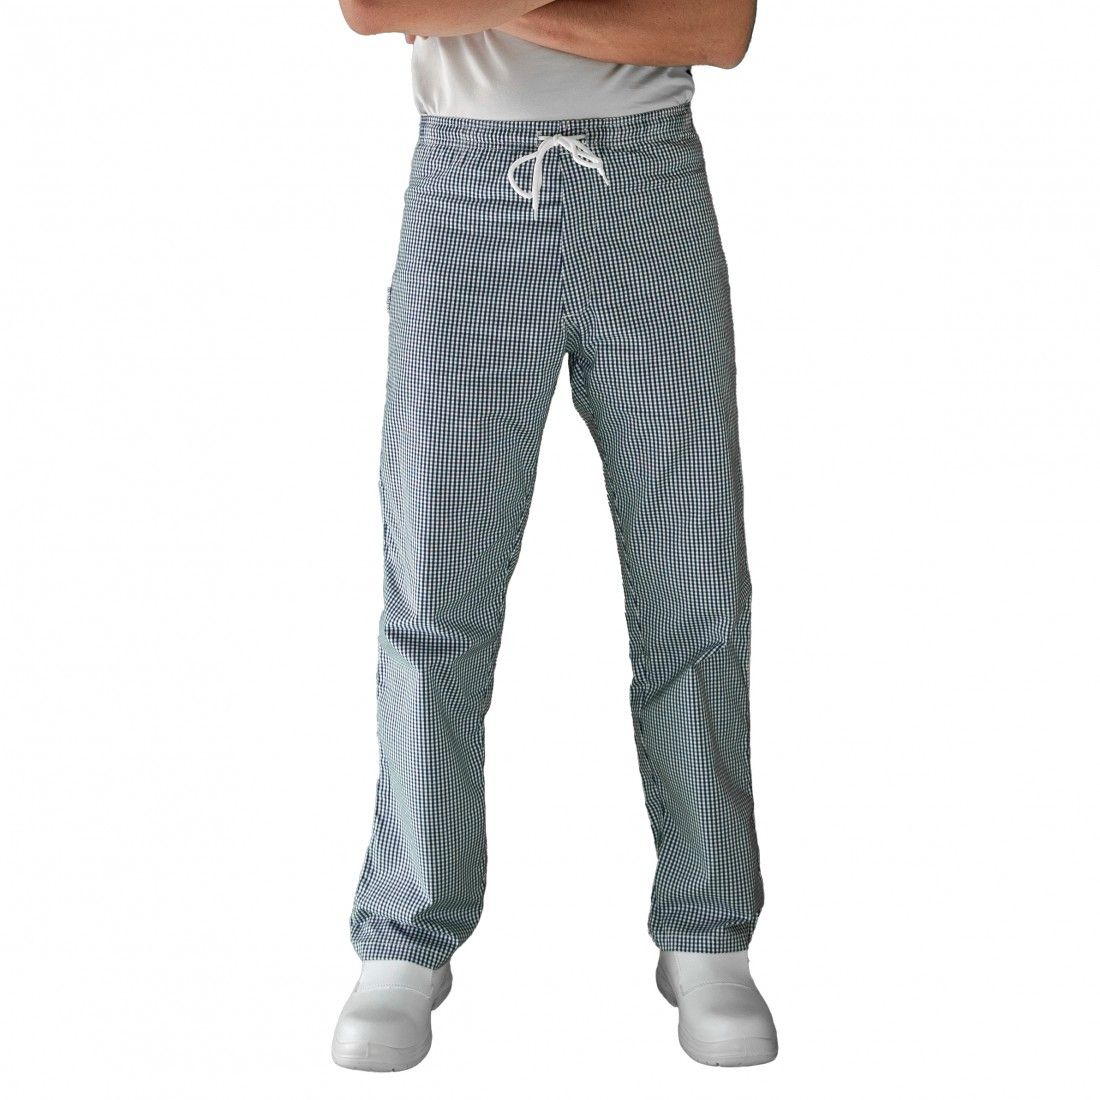 Pantalon de cuisine homme imprimé pied de poule - Pantalons de Cuisine 